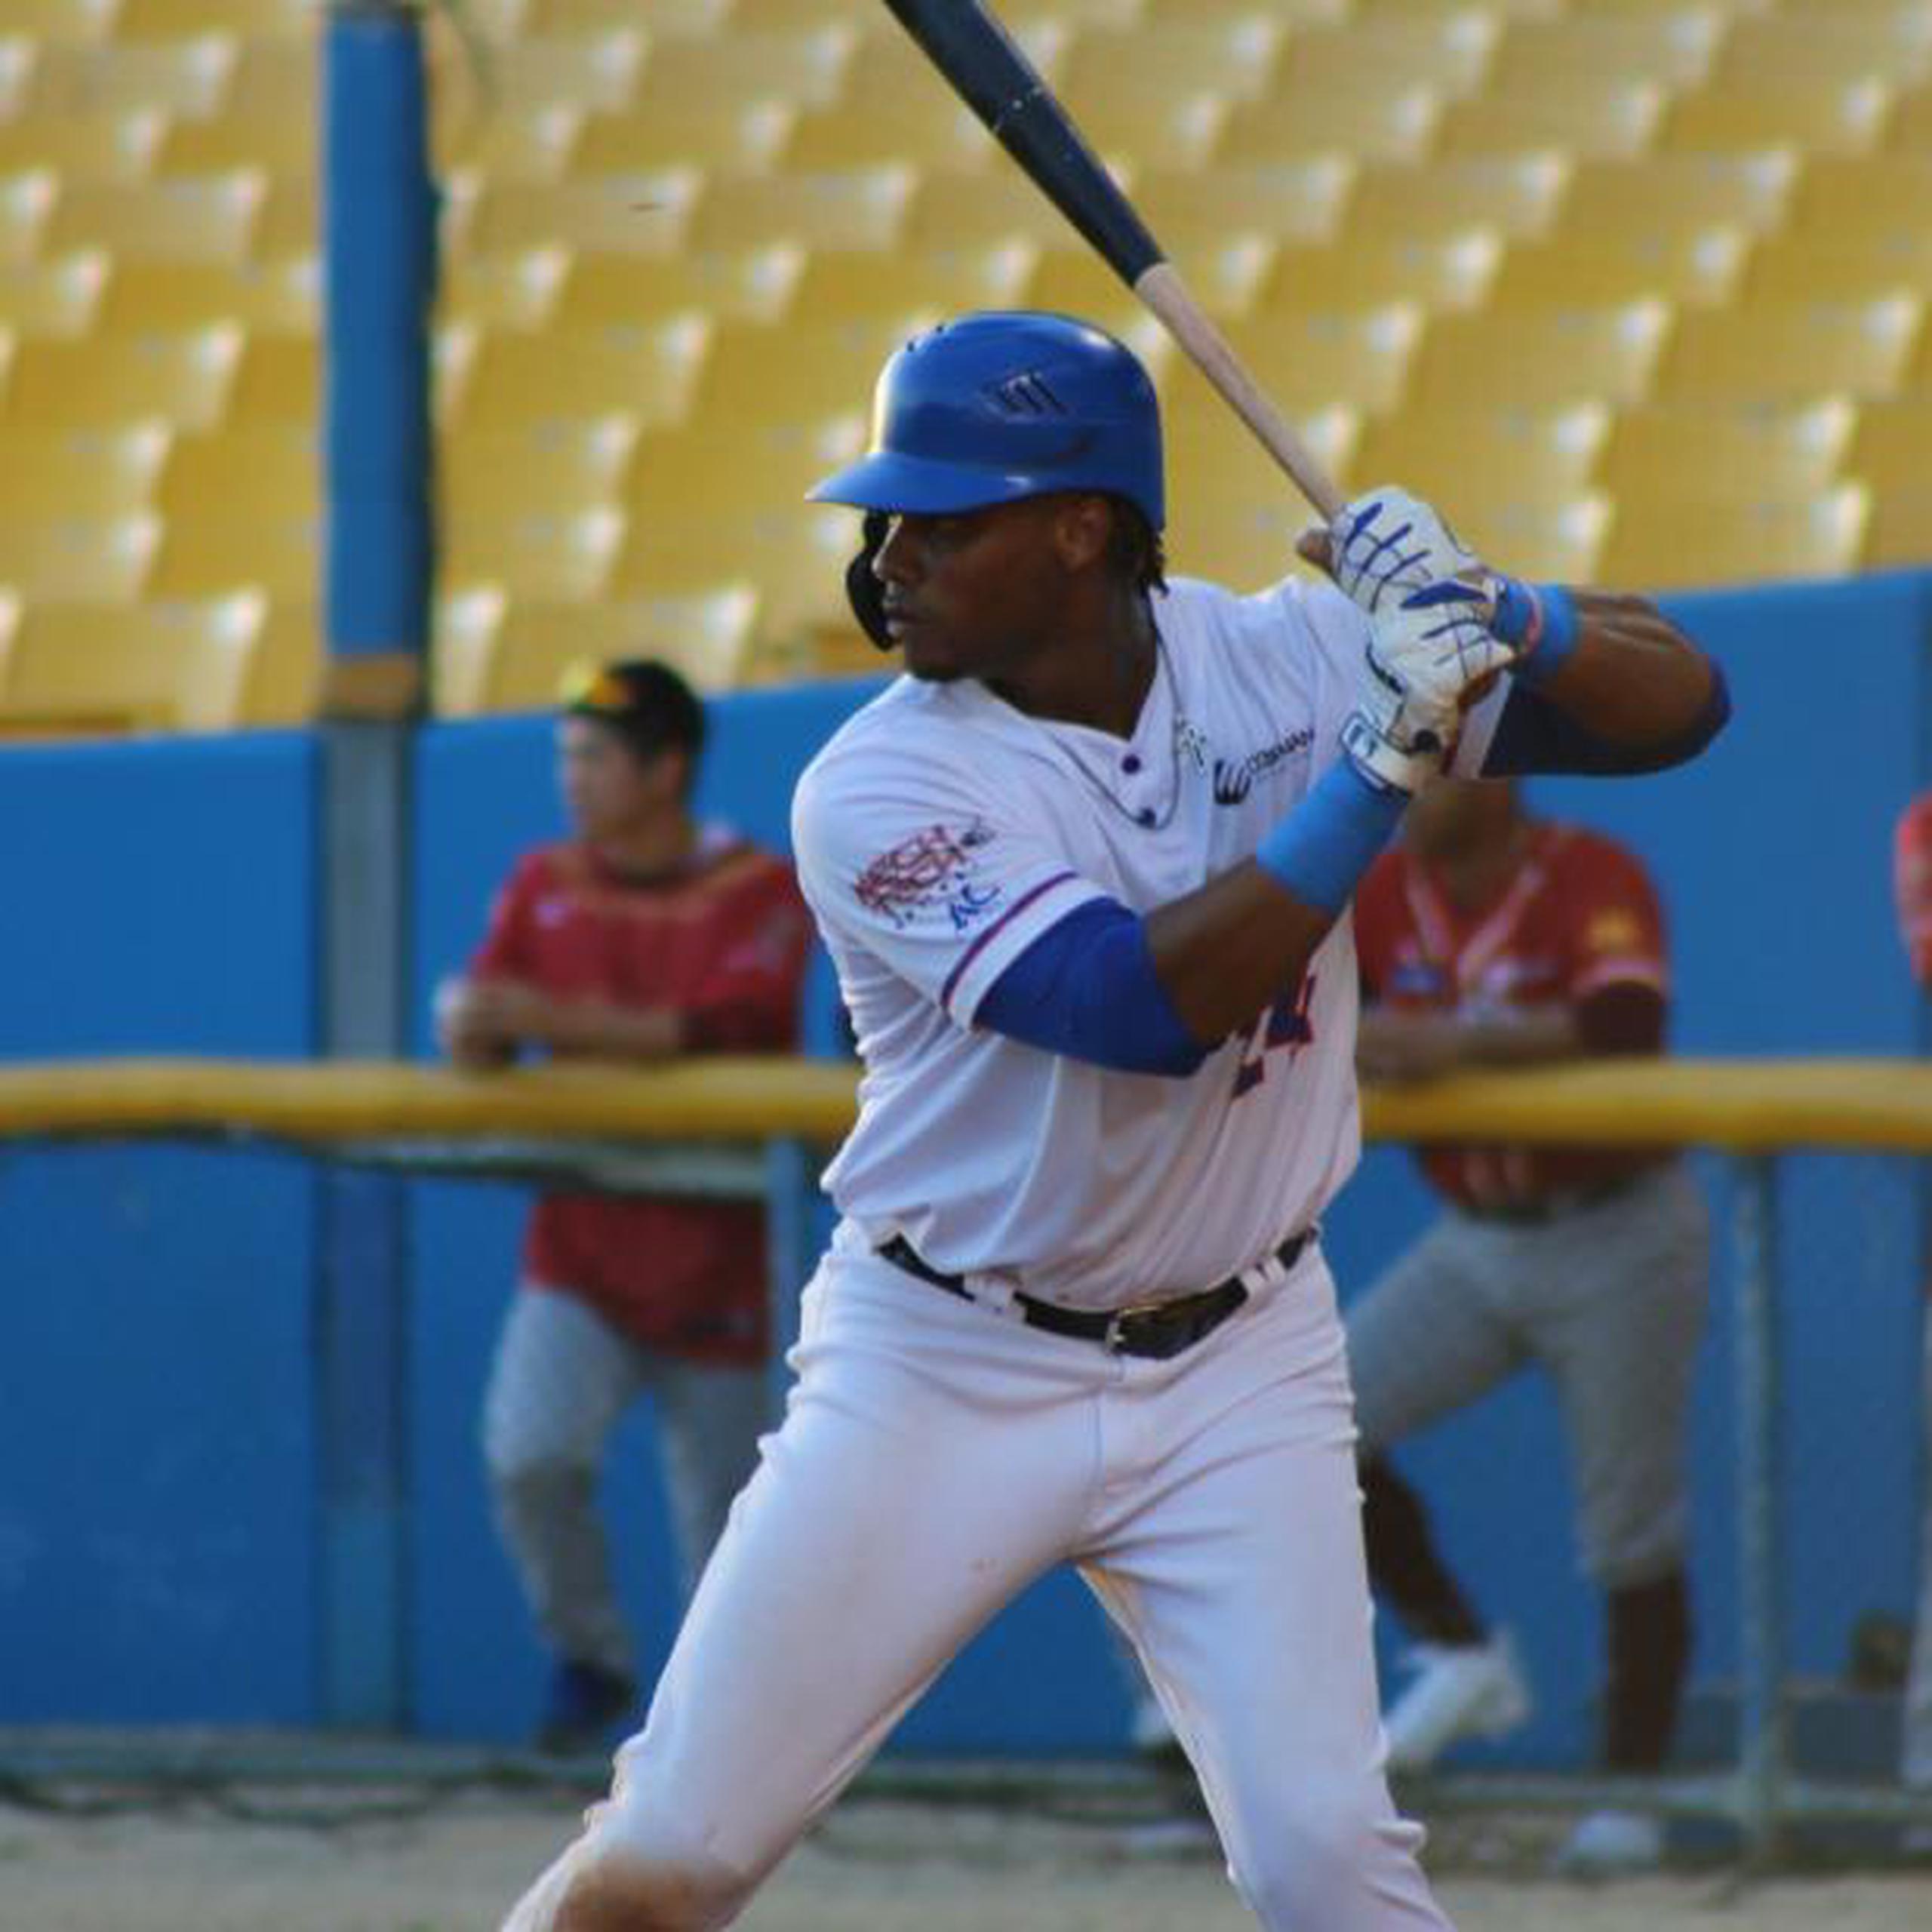 El novato de los Atenienses de Manatí, José Sermo, es un  bateador ambidextro y a la defensa, puede jugar tanto en el cuadro interior como en los jardines.  (Suministrada / LBPRC)